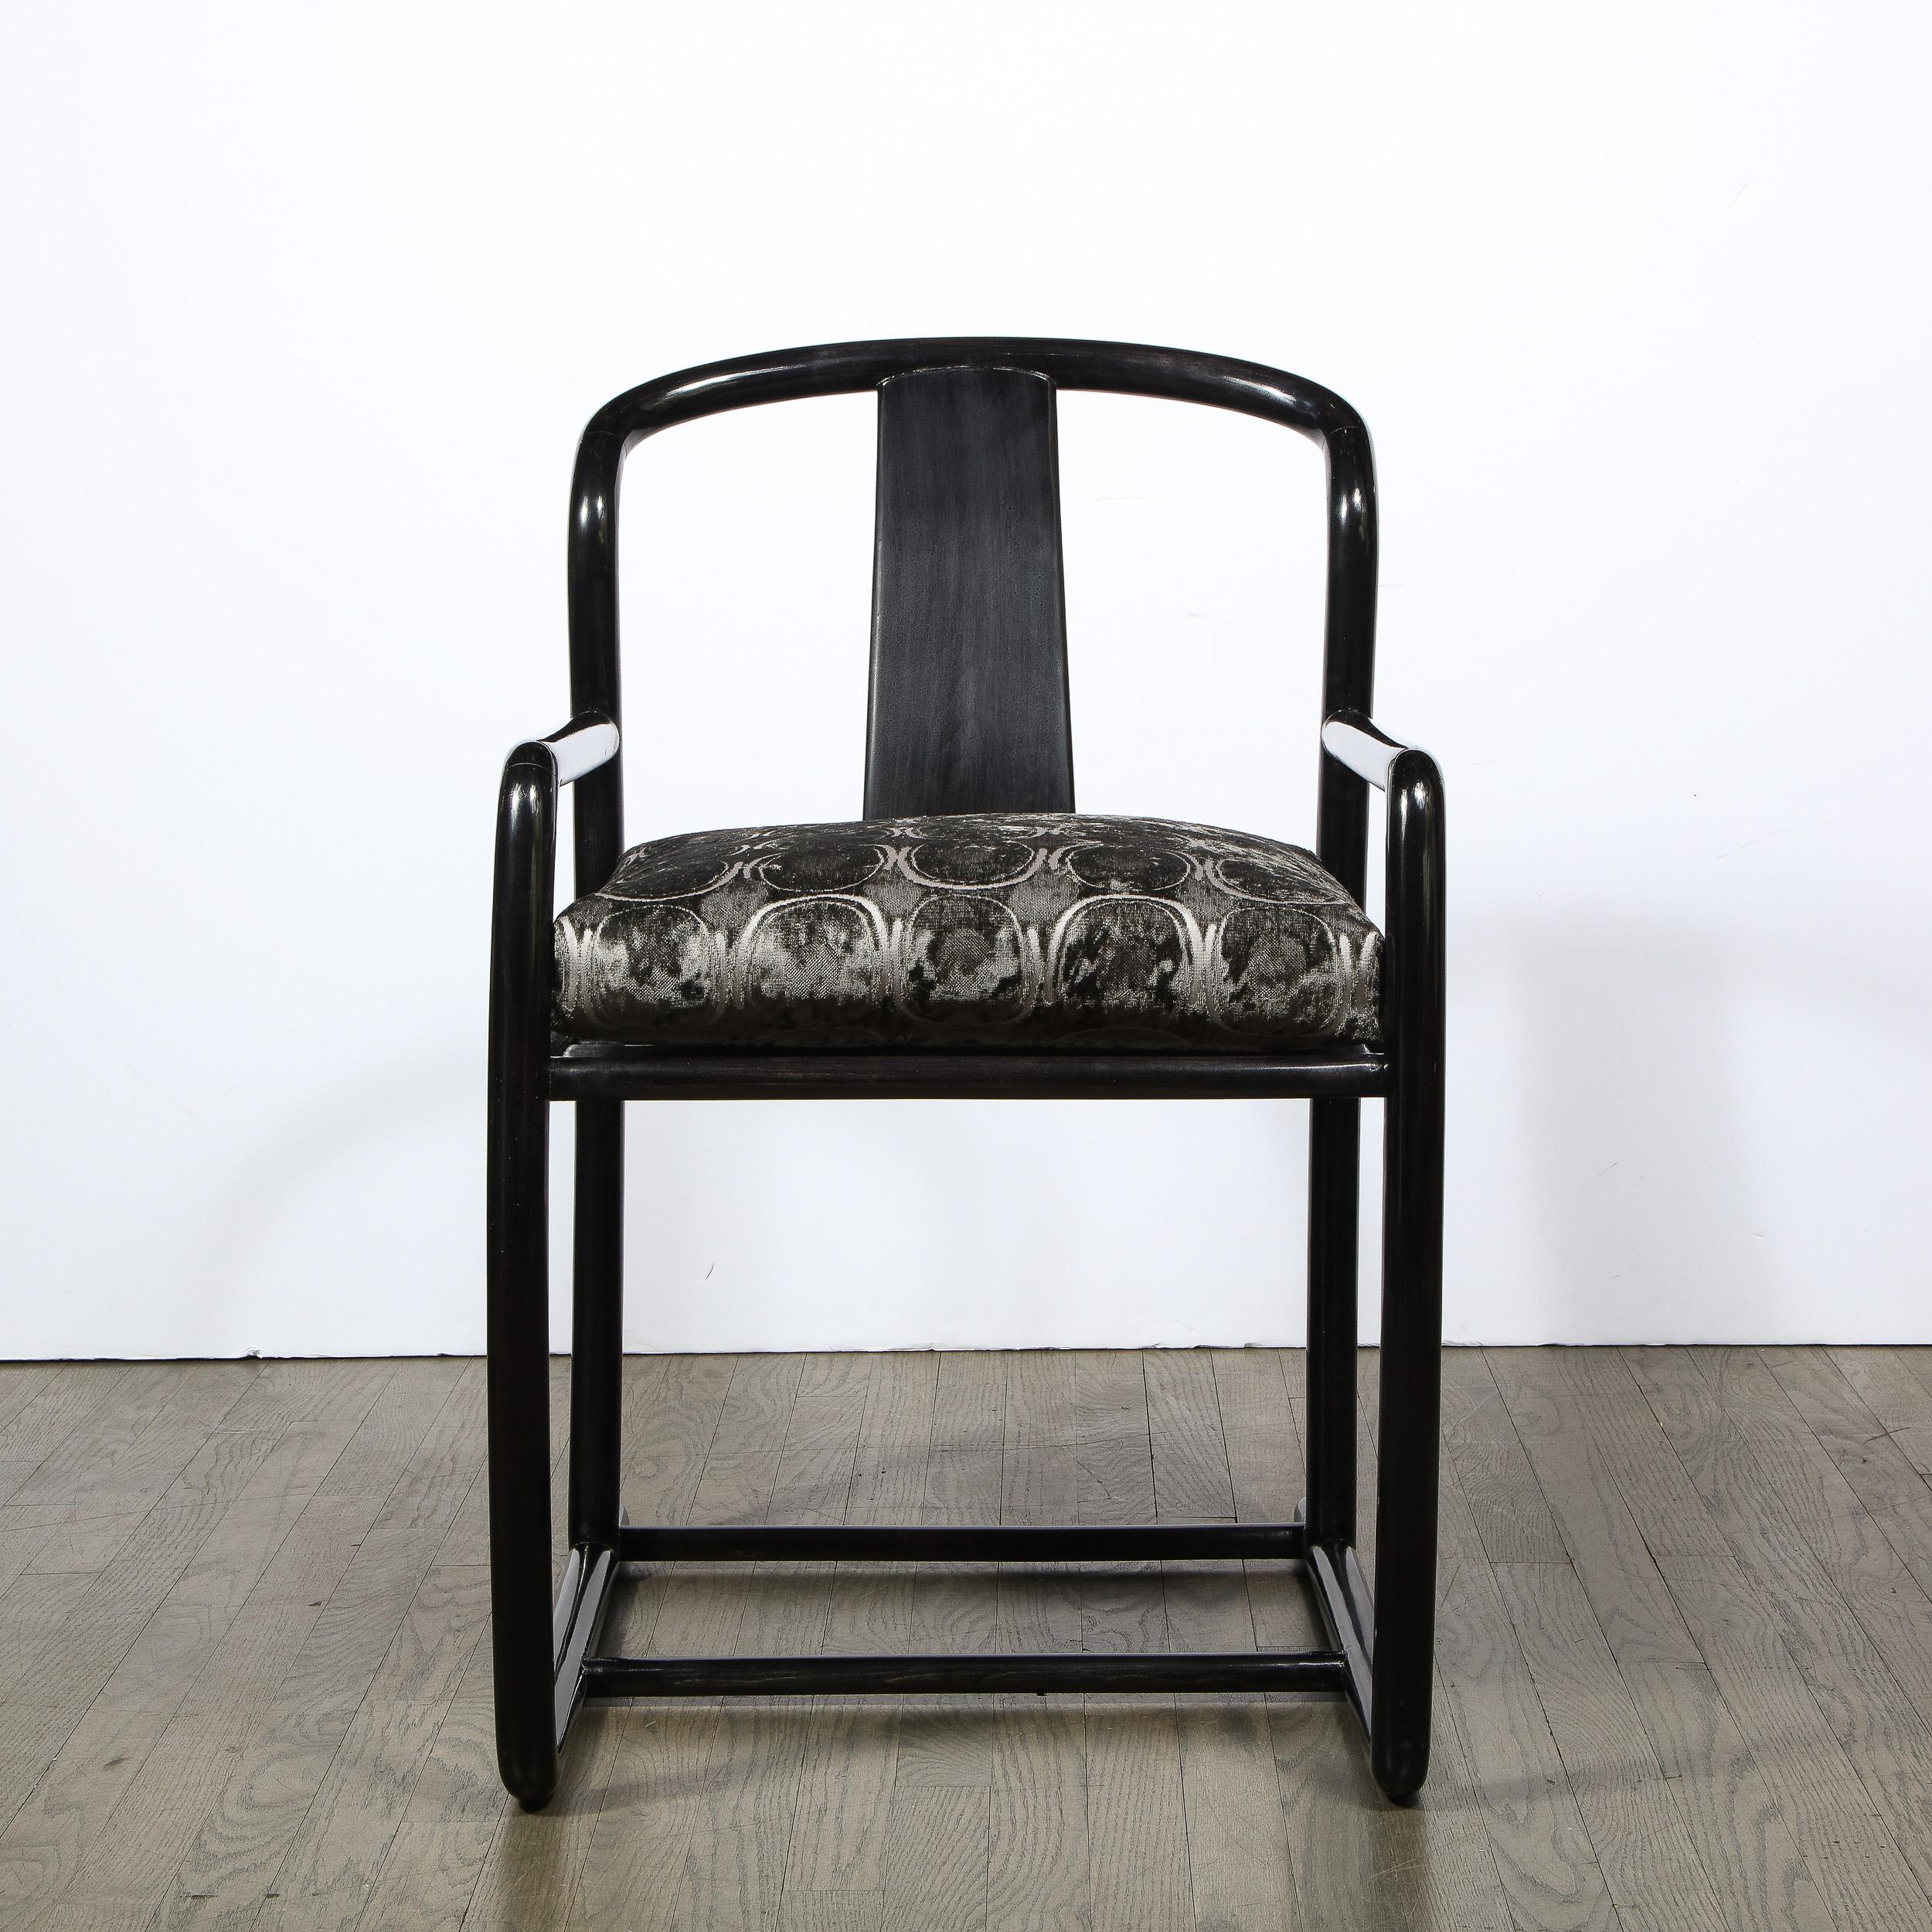 Cet ensemble sophistiqué et élégant de quatre fauteuils a été réalisé aux États-Unis par le grand Angelo Donghia vers 1985. Elles représentent une réinterprétation des chaises en fer à cheval emblématiques qui ont été inventées pendant la dynastie